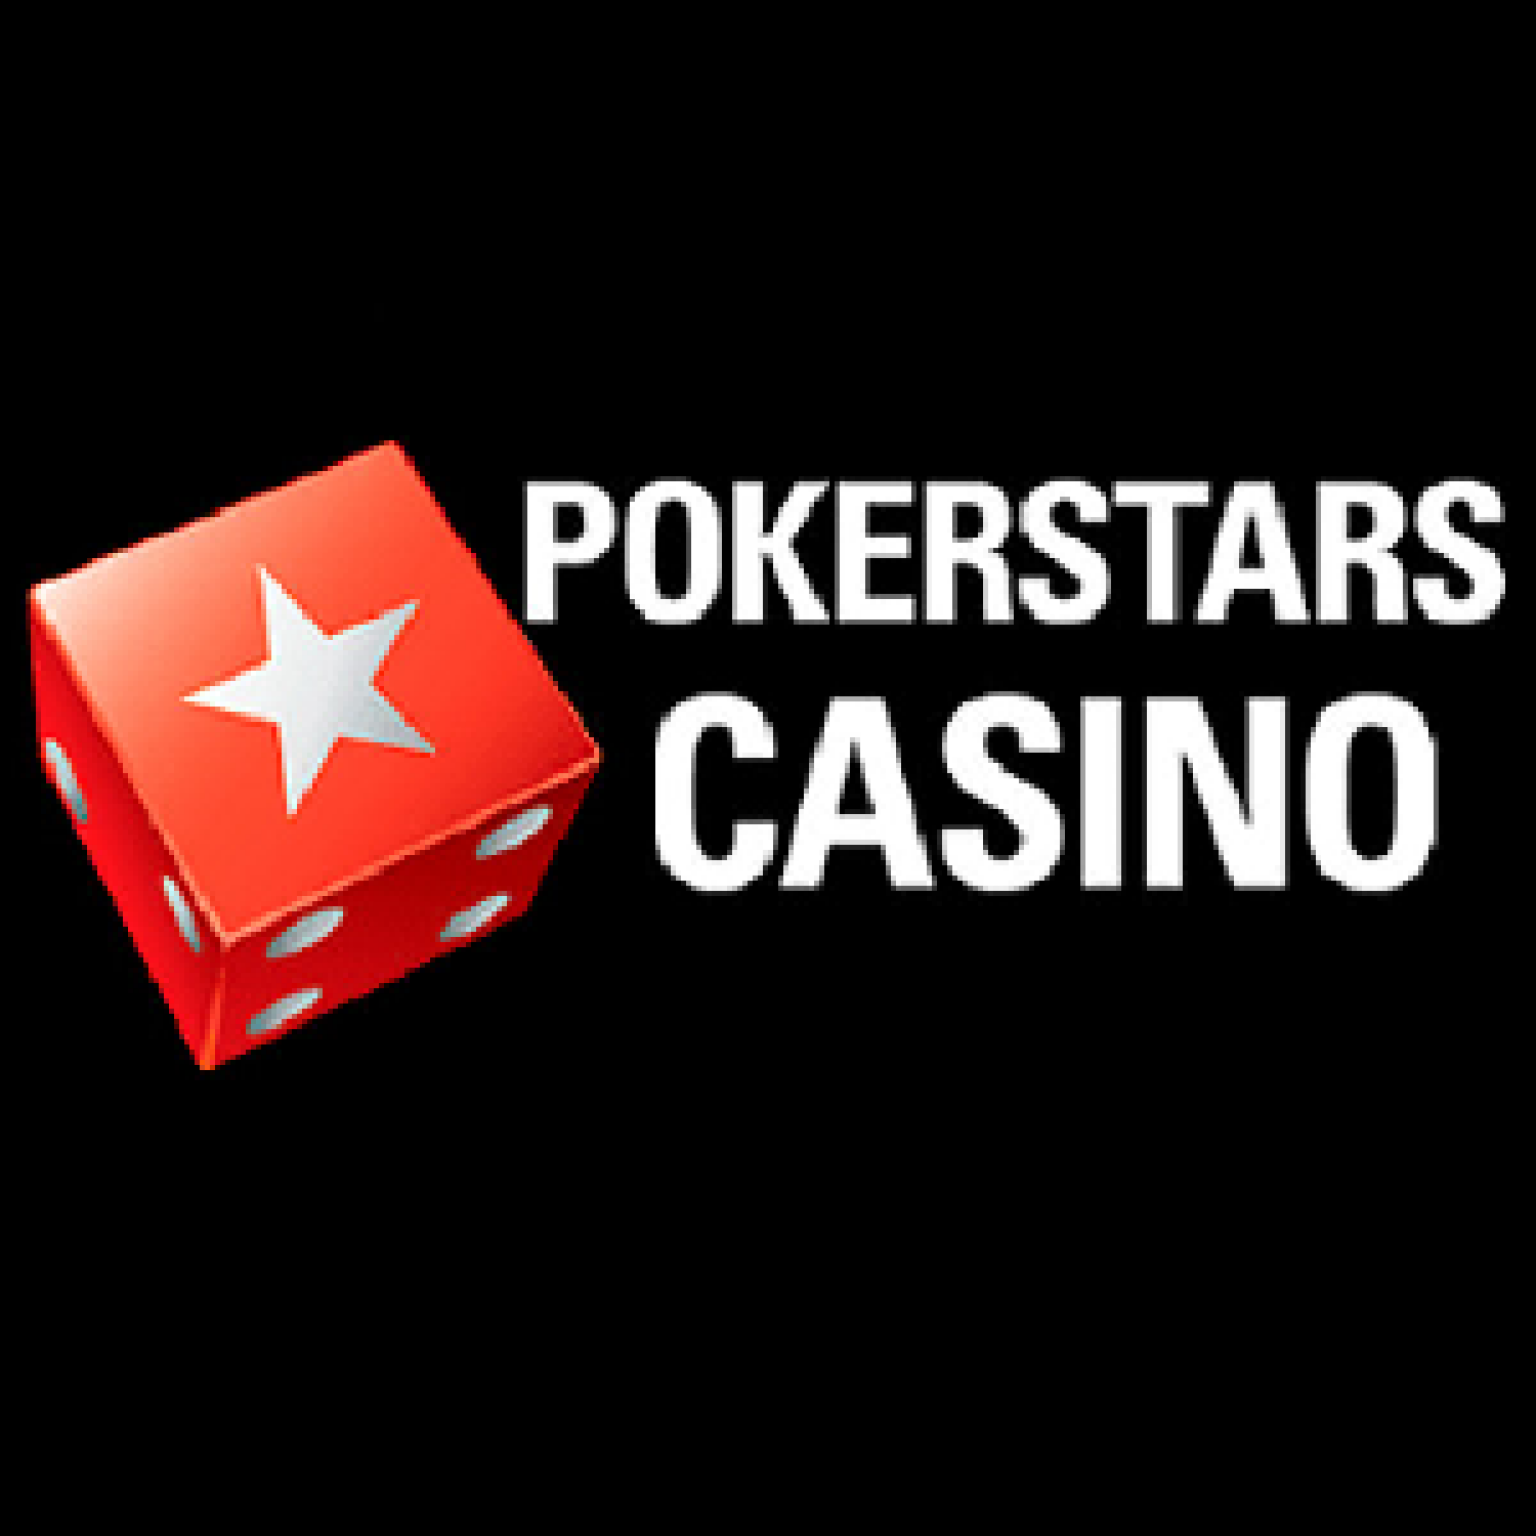 pokerstars casino games pokerstars